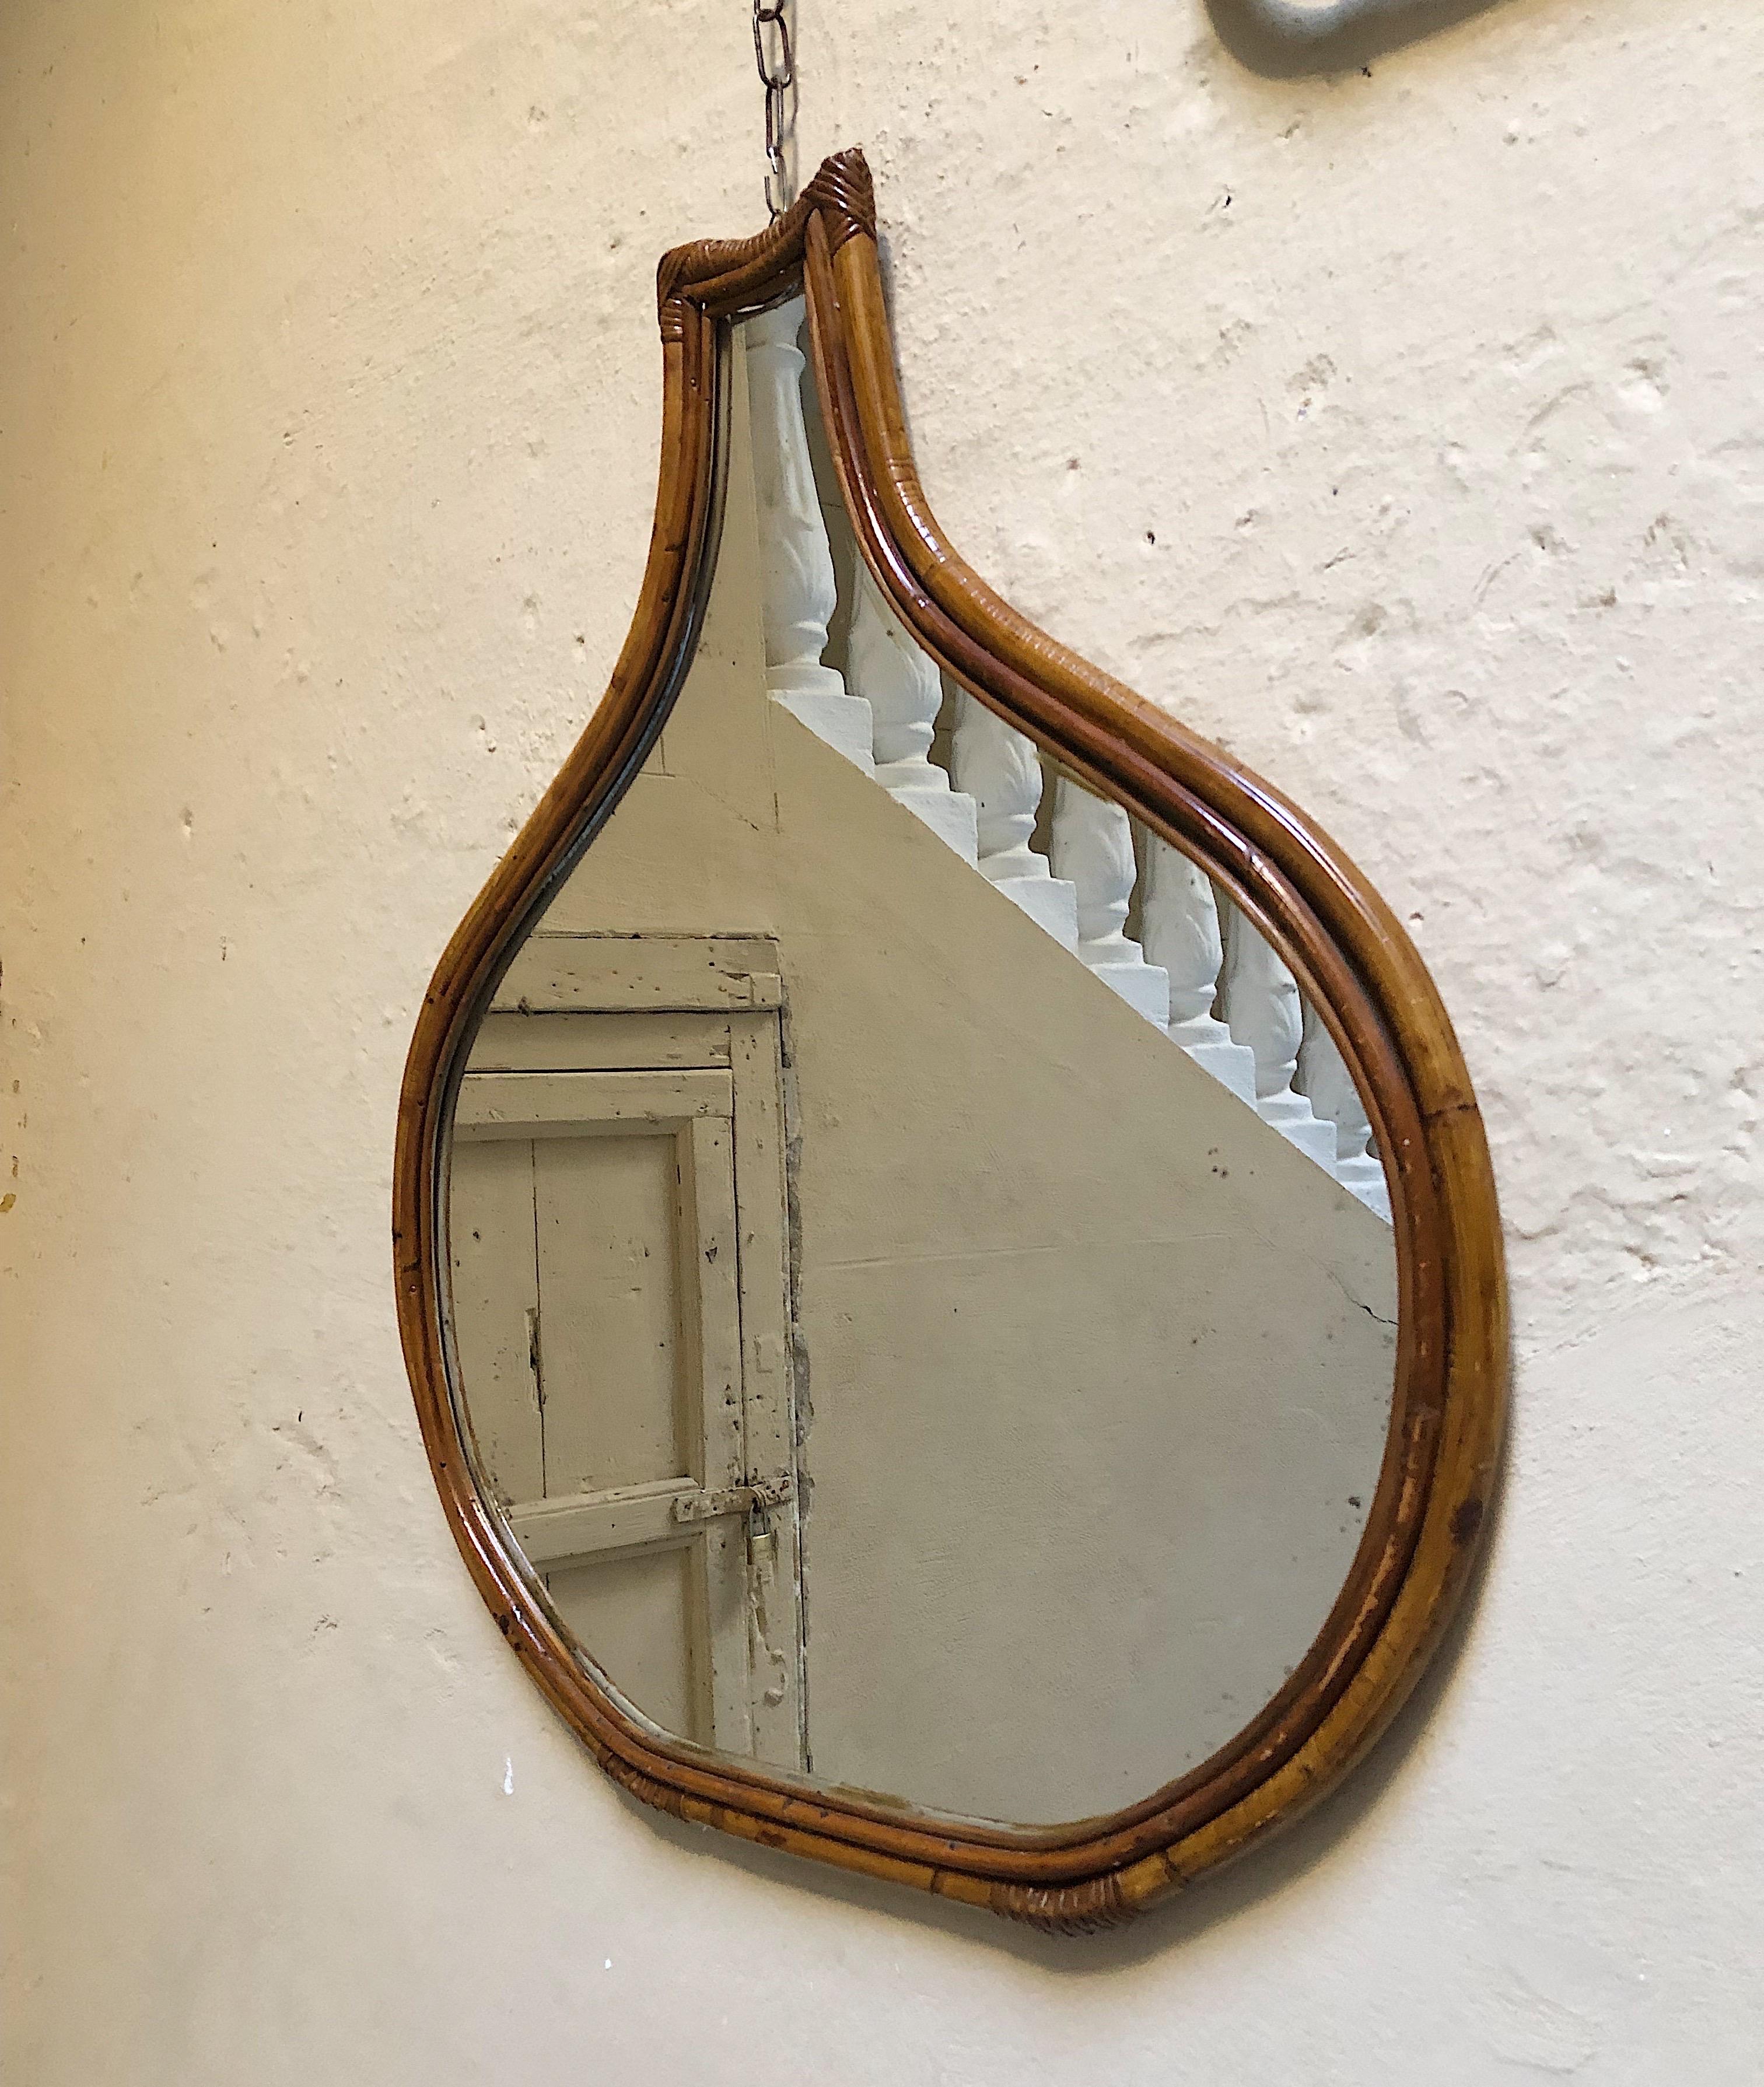 Jetez un coup d'œil à ce miroir en rotin des années 1970 - il a une forme de poire ronde qui est tout à fait unique. Nous sommes totalement séduits par son ambiance funky.

Il est parfait pour embellir votre entrée, votre salon ou même pour vous